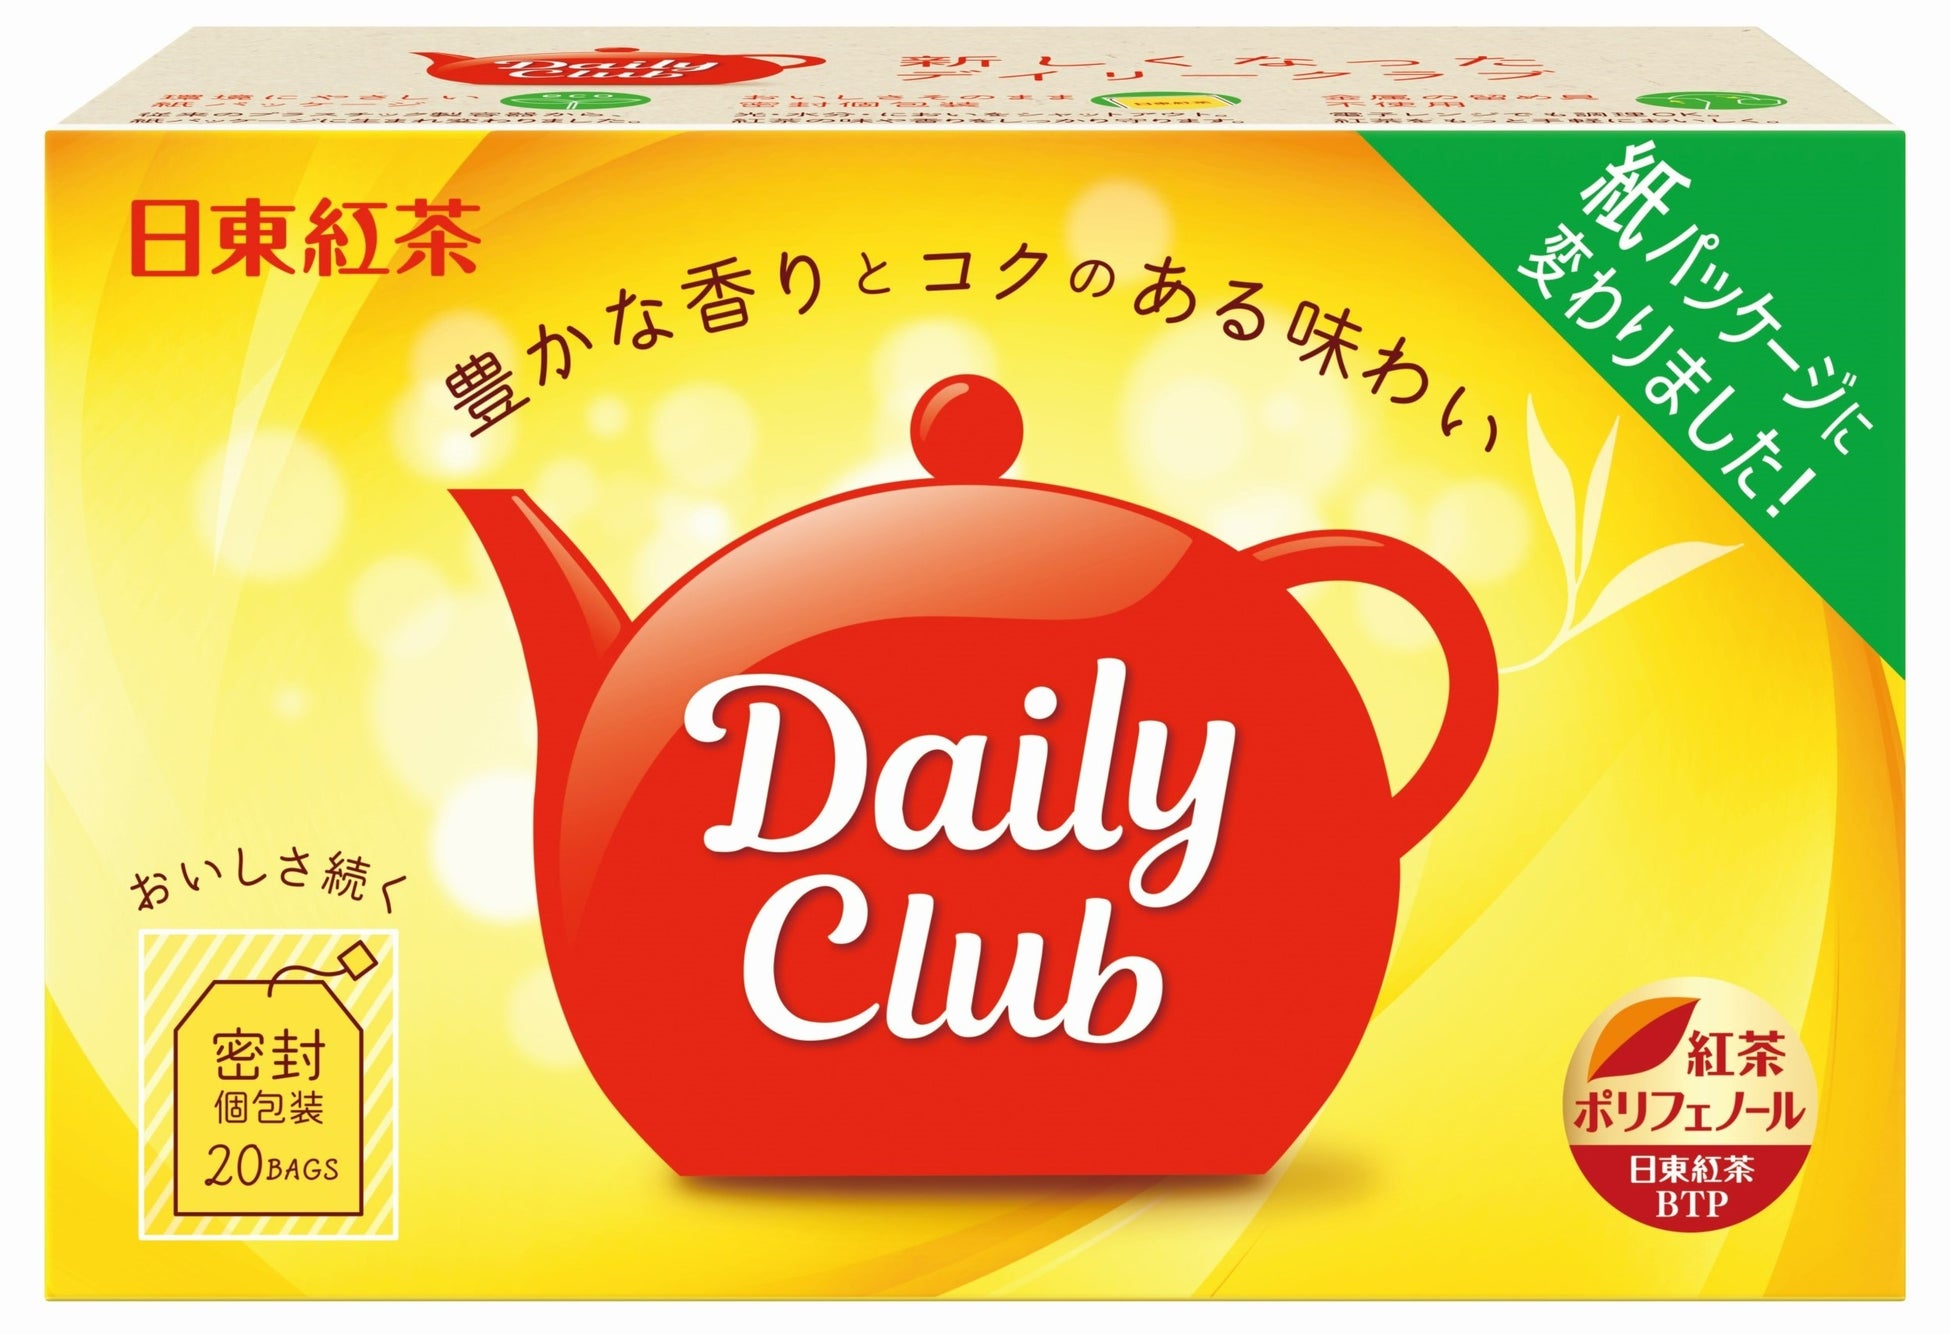 デイリークラブを購入したレシートで応募しよう！「日東紅茶ポイント もれなく200Pプレゼントキャンペーン！！」の実施について